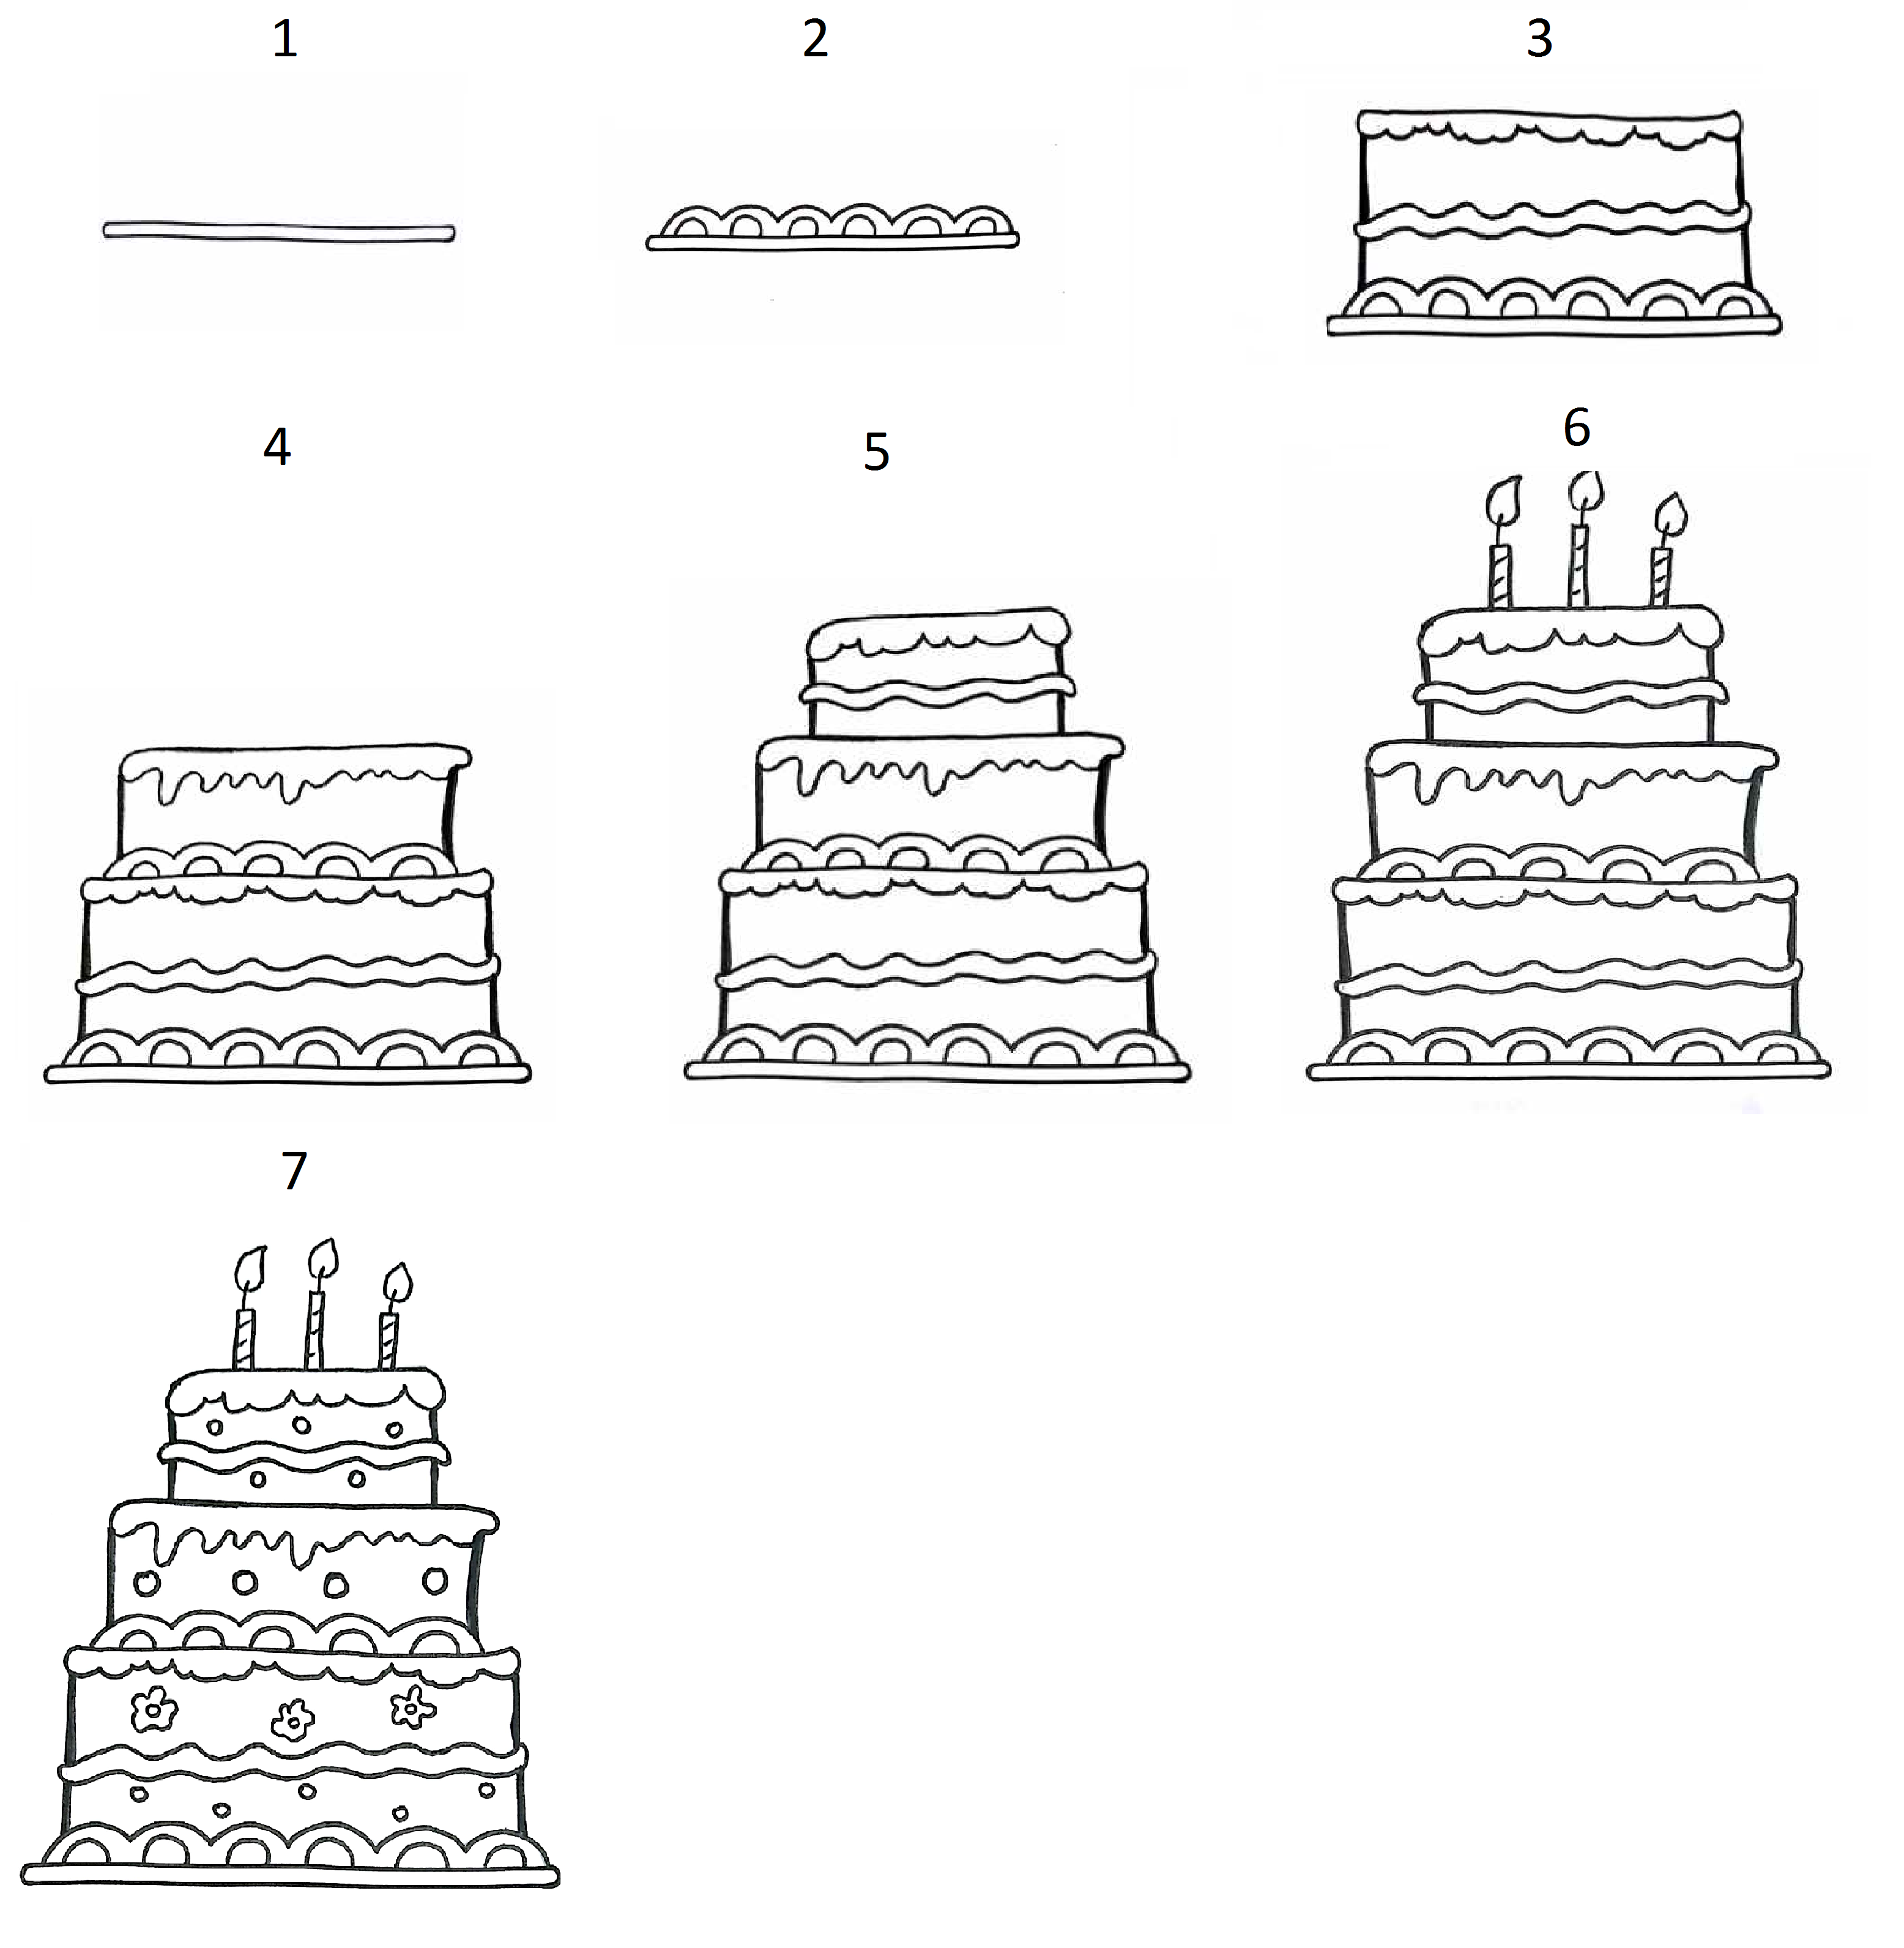 Как нарисовать торт карандашом - легкая поэтапная инструкция рисования торта на День рождения